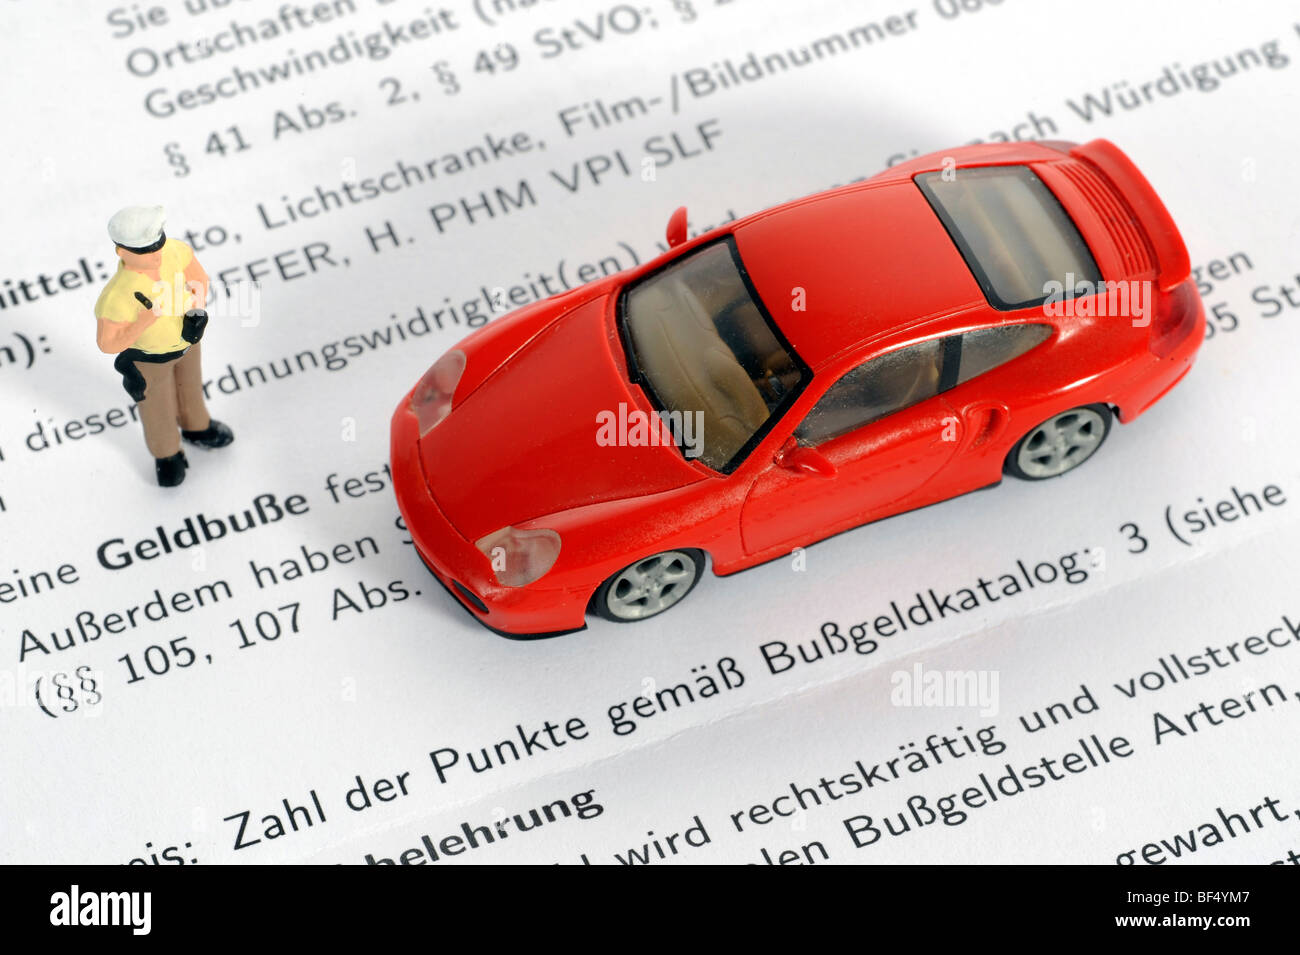 Miniatur-Polizist und Porsche als ein symbolisches Bild für eine Geldstrafe Stockfoto